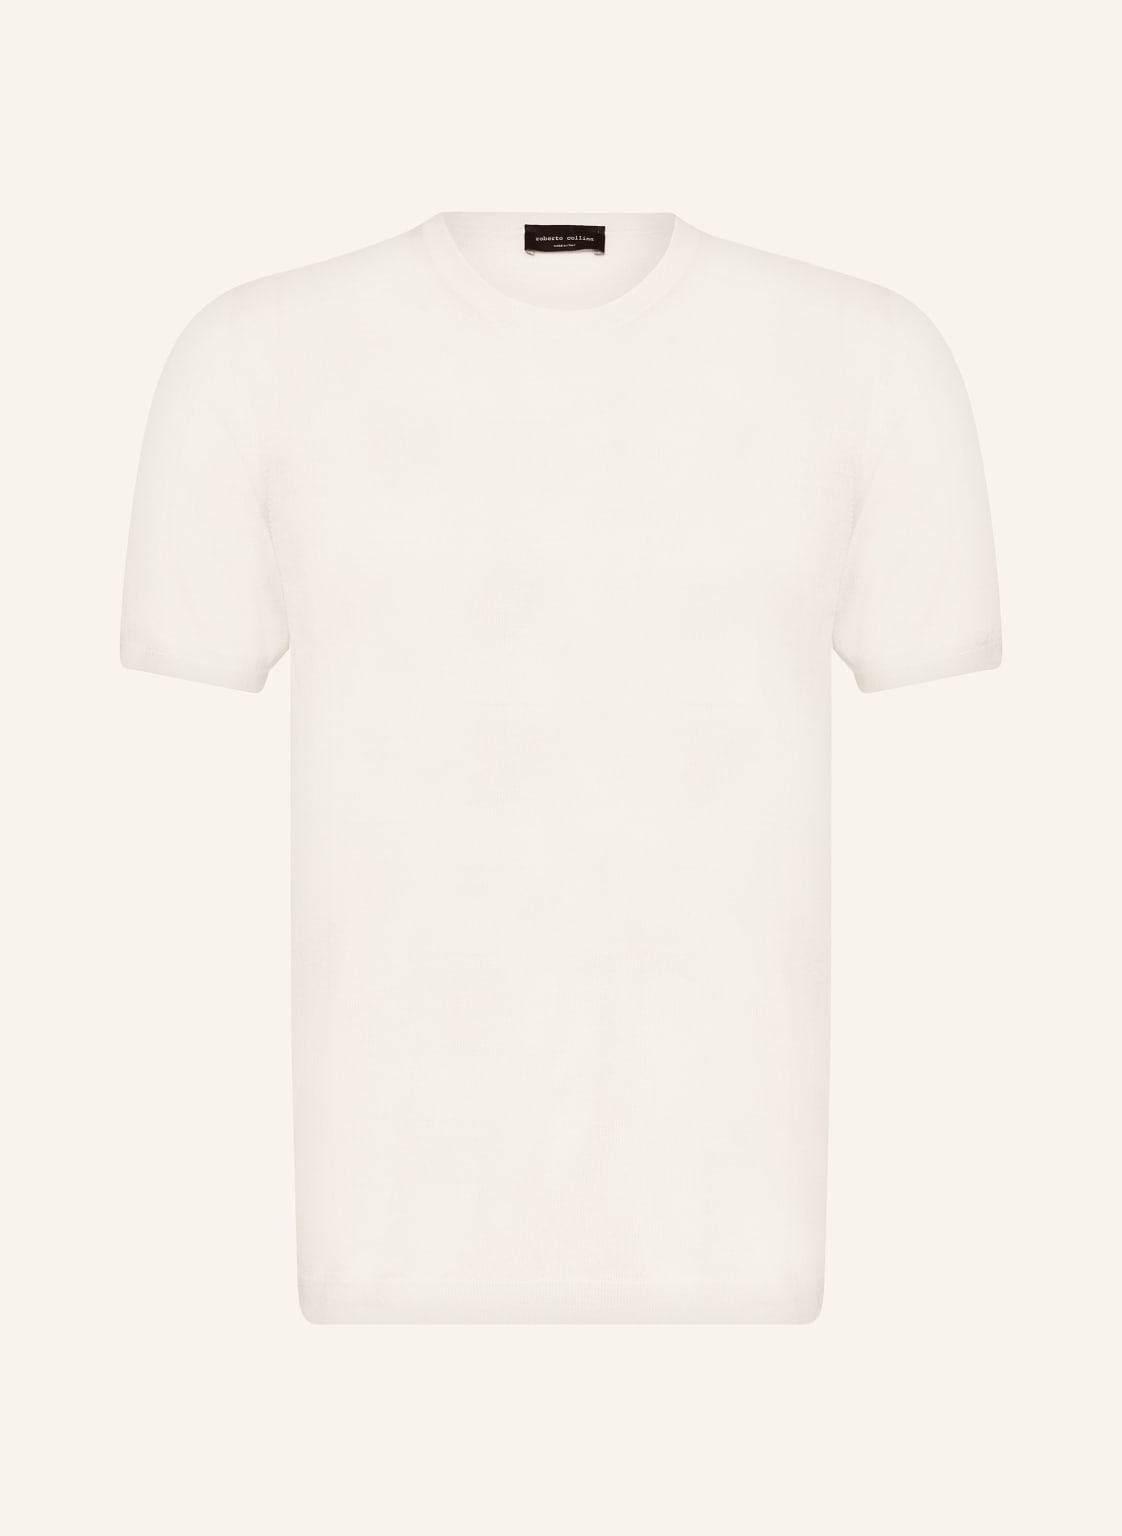 Roberto Collina T-Shirt Aus Seide weiss von roberto collina